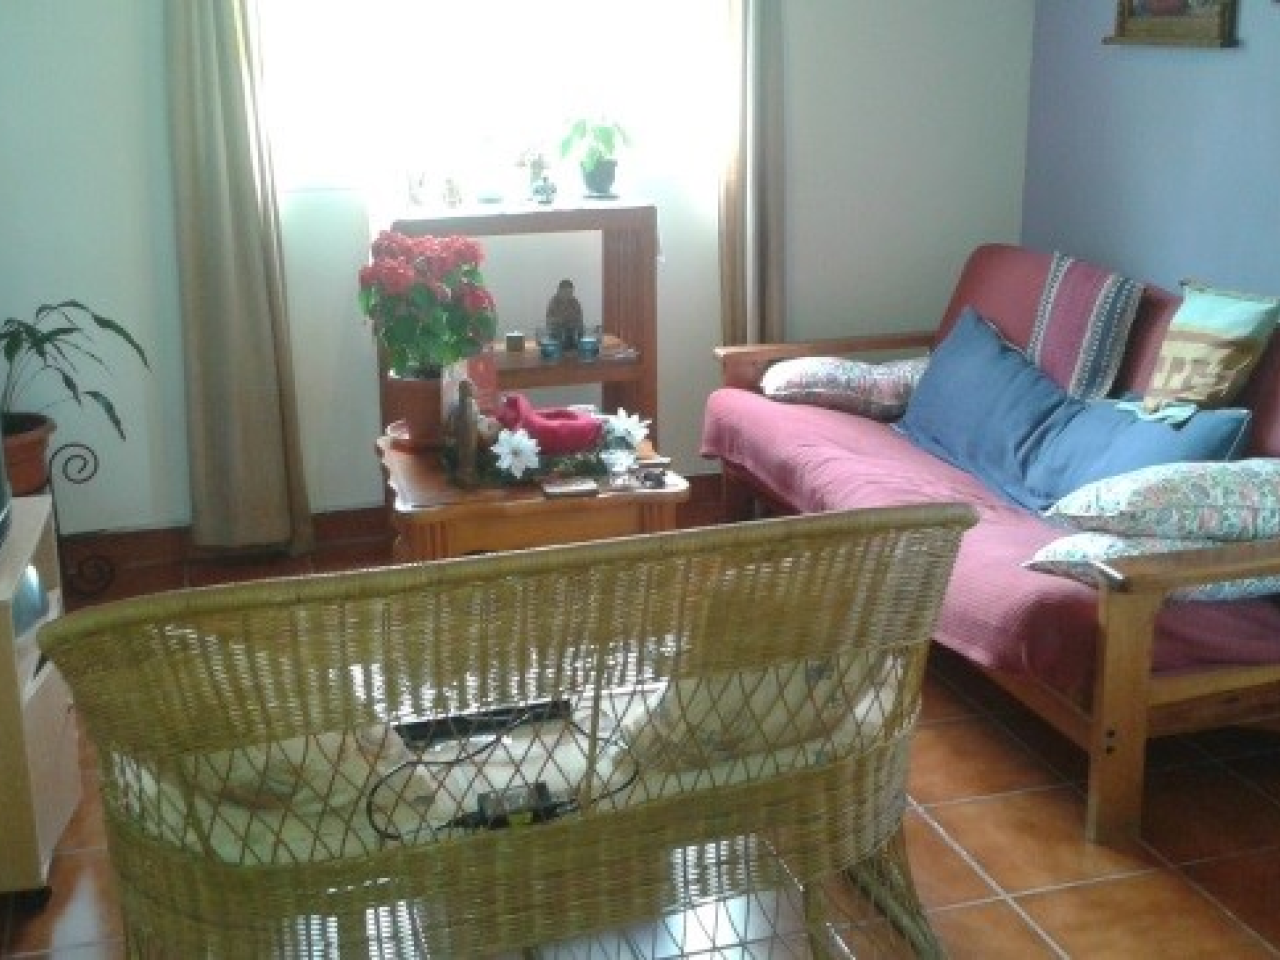 Sala de estar con paredes color azul claro, 2 sofás una mesita de madera color cafe y una ventana con vista al patio.